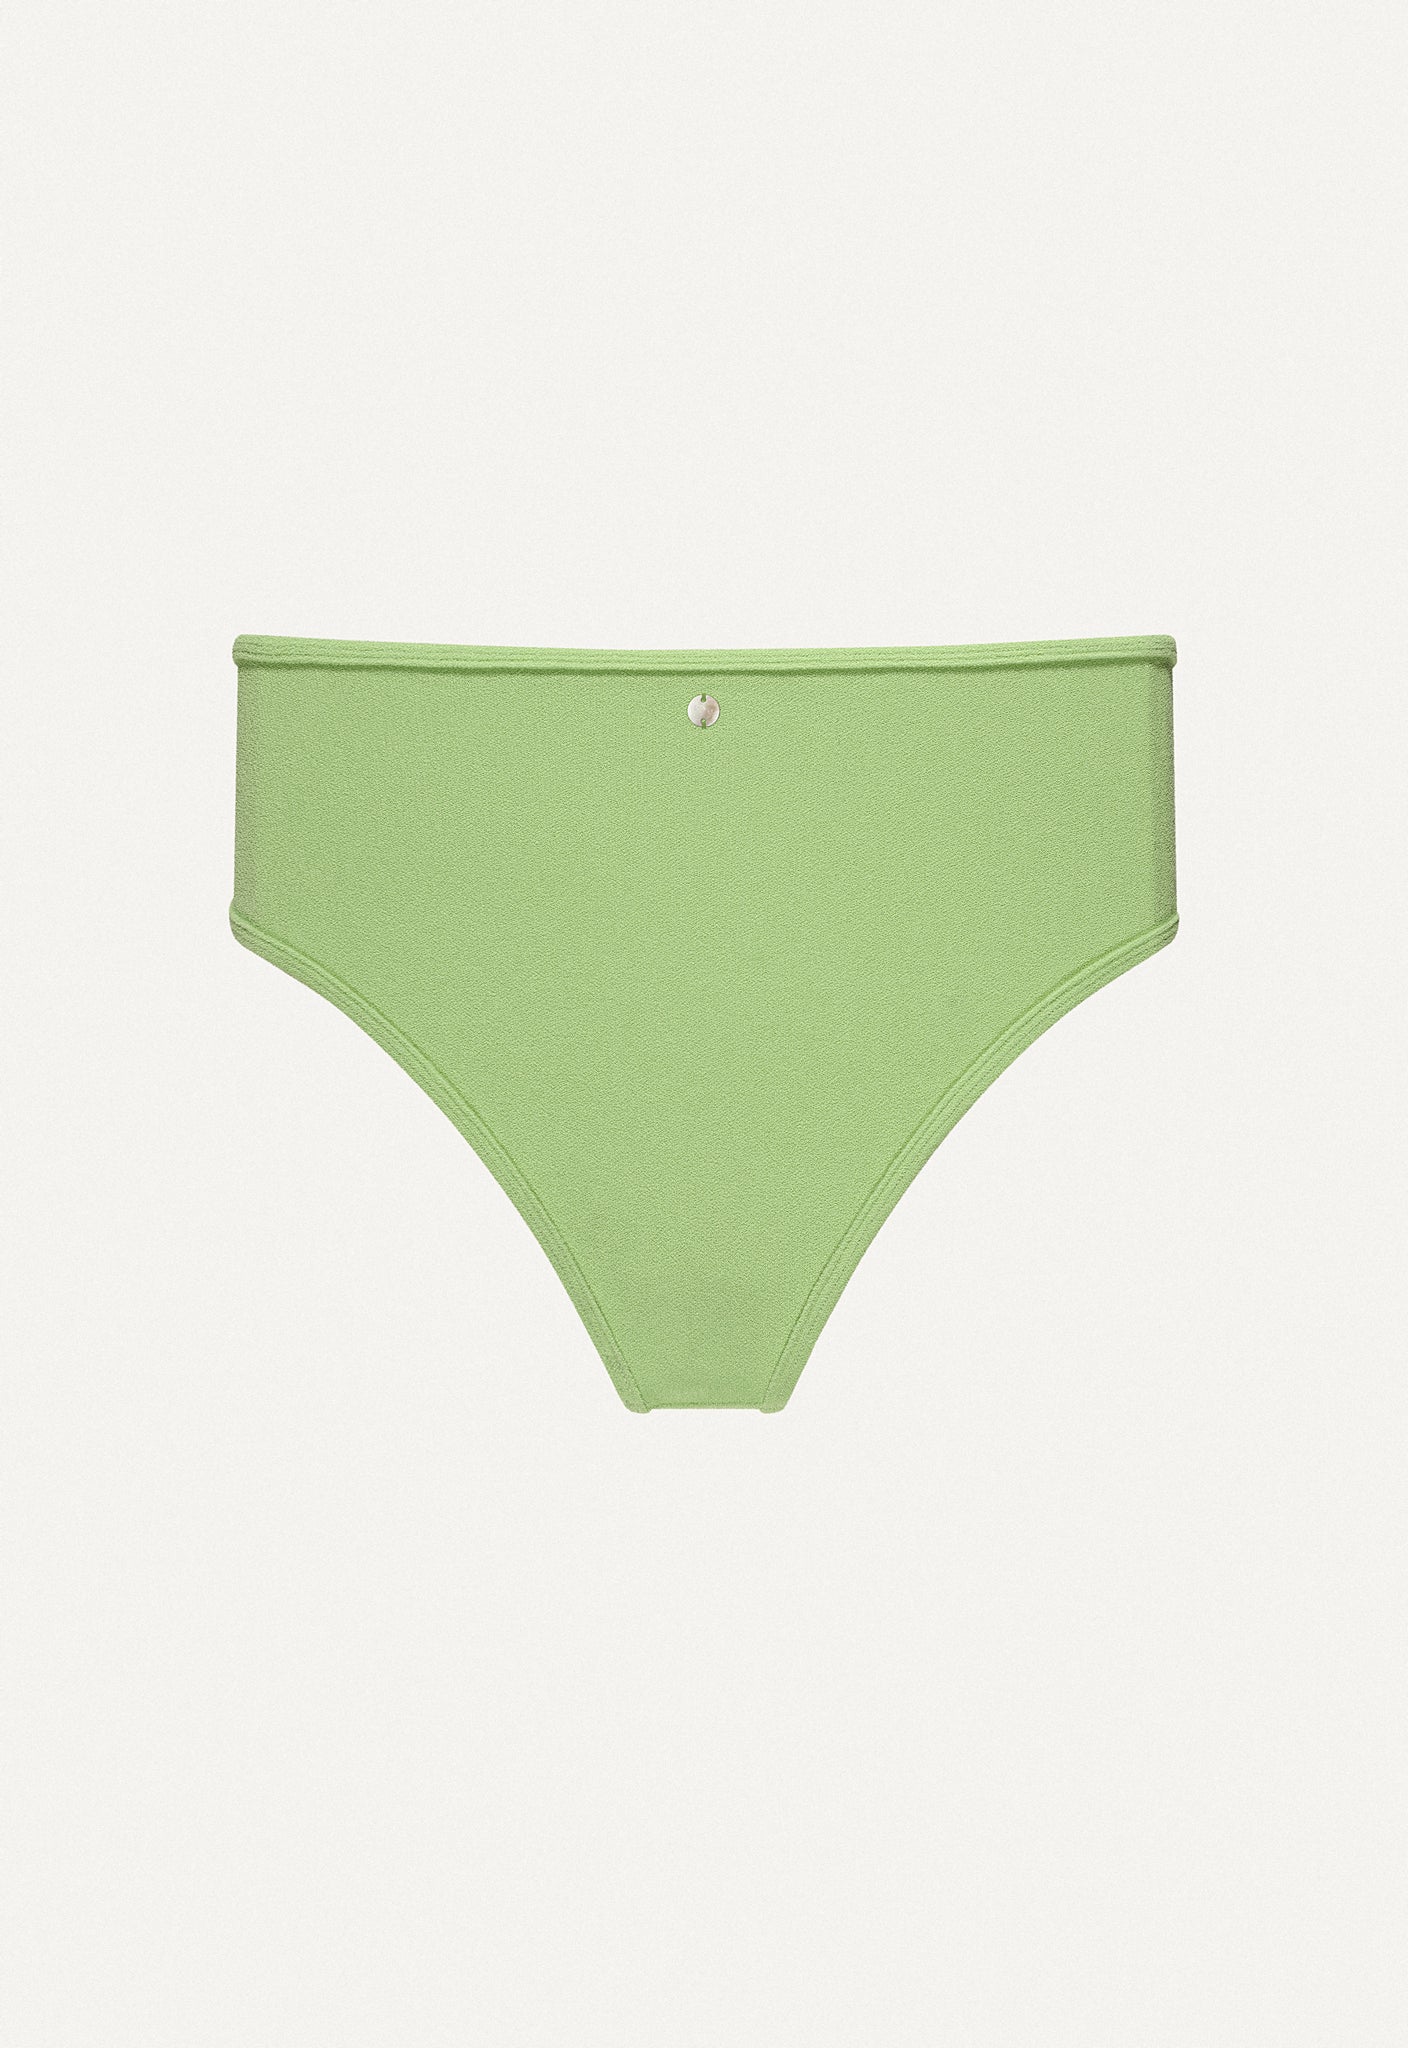 Bikini Bottom "Samun" in linden green terry